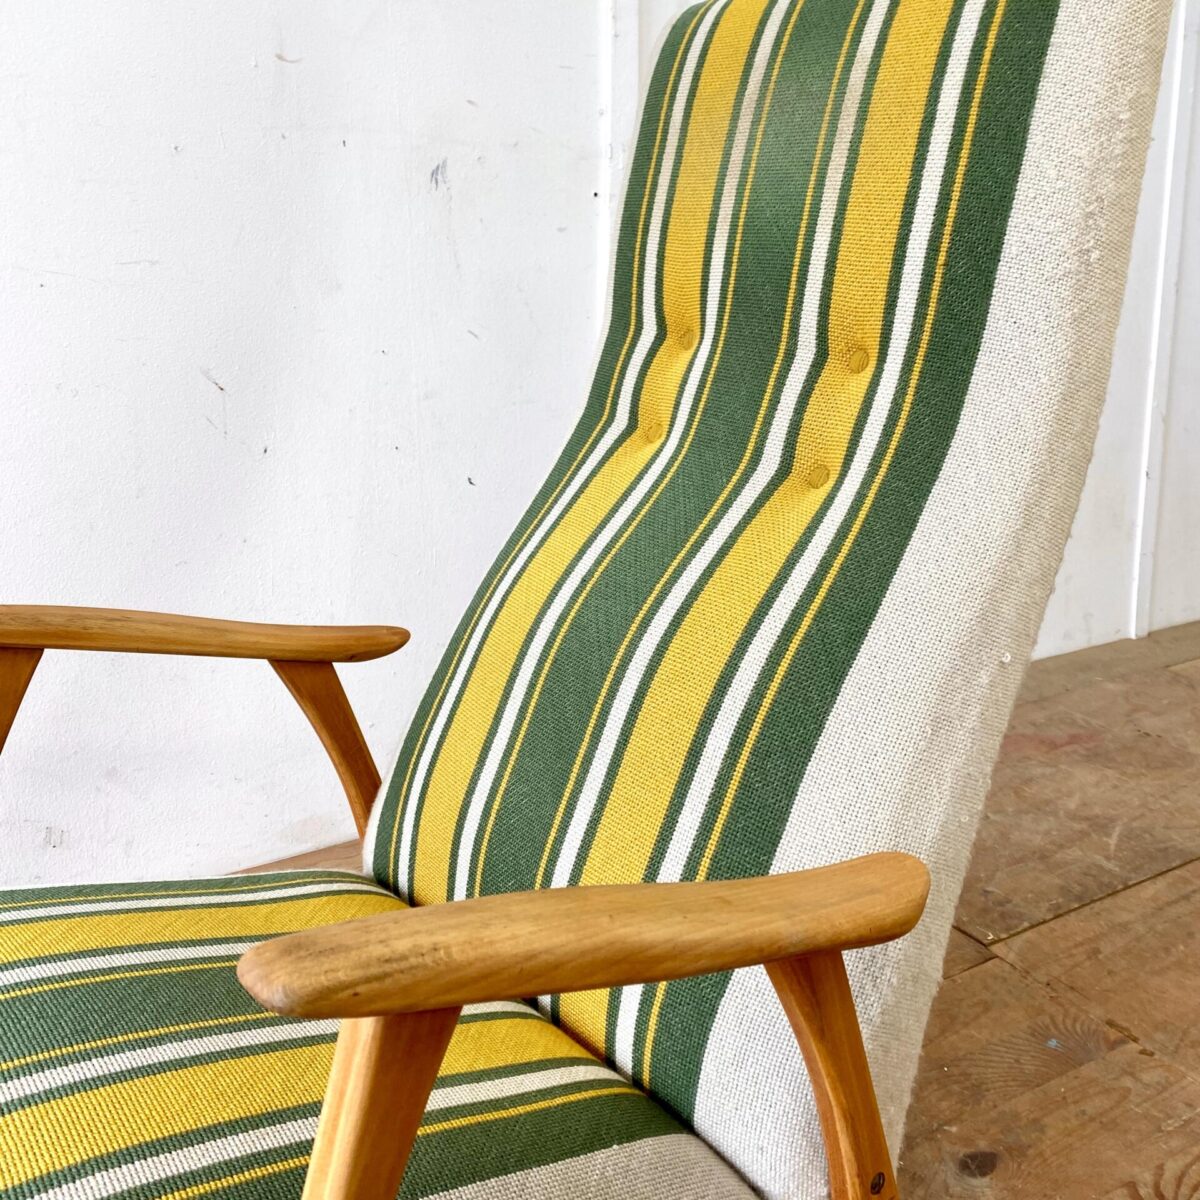 Deuxieme.shop midcentury Cocktail Sessel easy Chair, danish furniture. Vintage Stoff Sessel mit hohem Rücken. Der grün-gelbe Stoffbezug ist leicht abgewetzt, Buchenholz Beine und Armlehnen mit Alterspatina. 